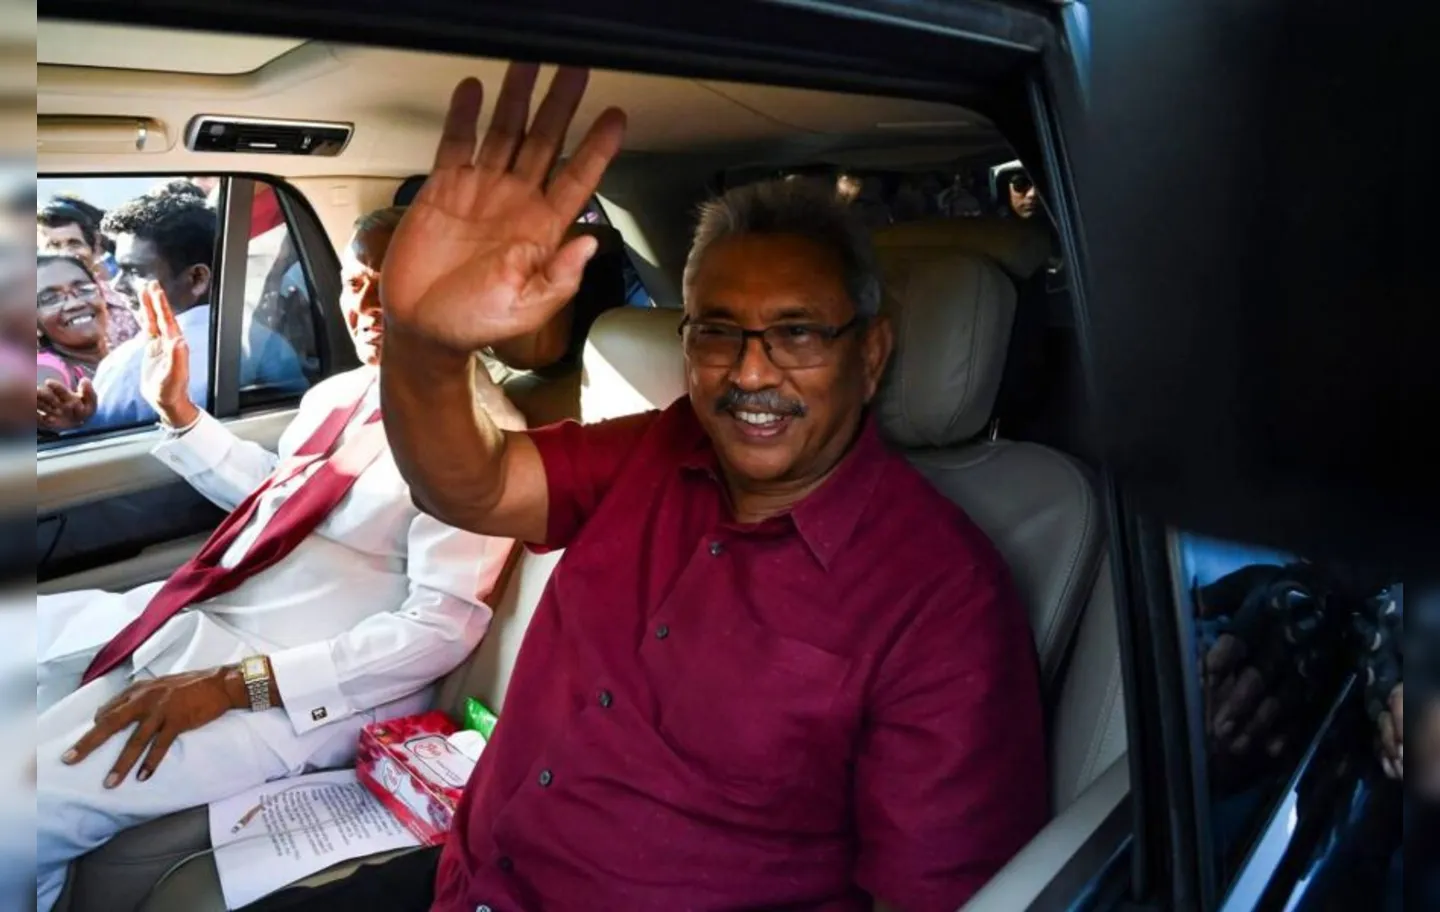 Gotabaya Rajapaksa enfrenta uma onda de protestos por causa das denúncias de corrupção contra seu governo